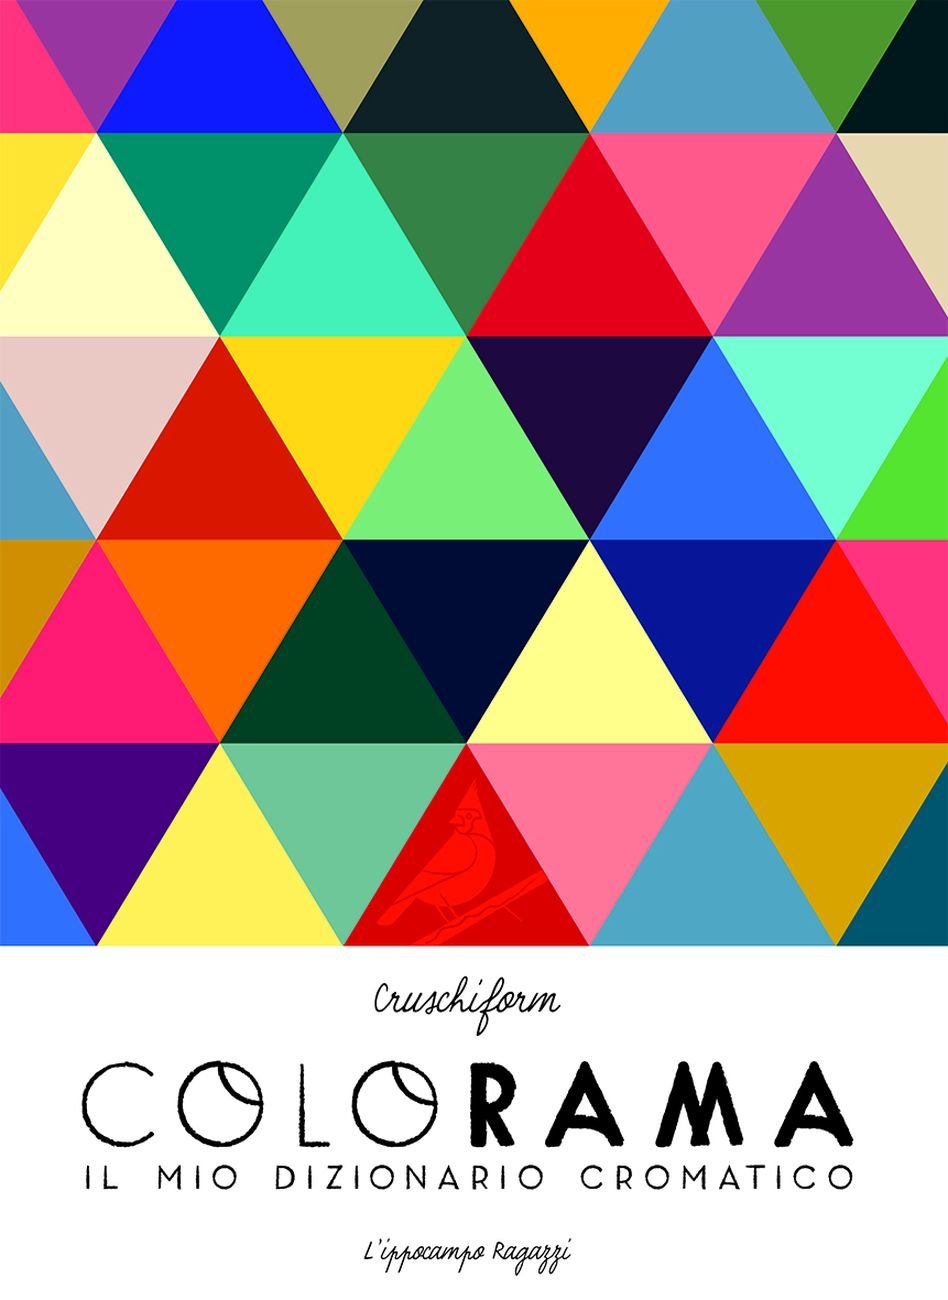 Cruschiform – Colorama. Il mio campionario cromatico (L’ippocampo, Milano 2017)